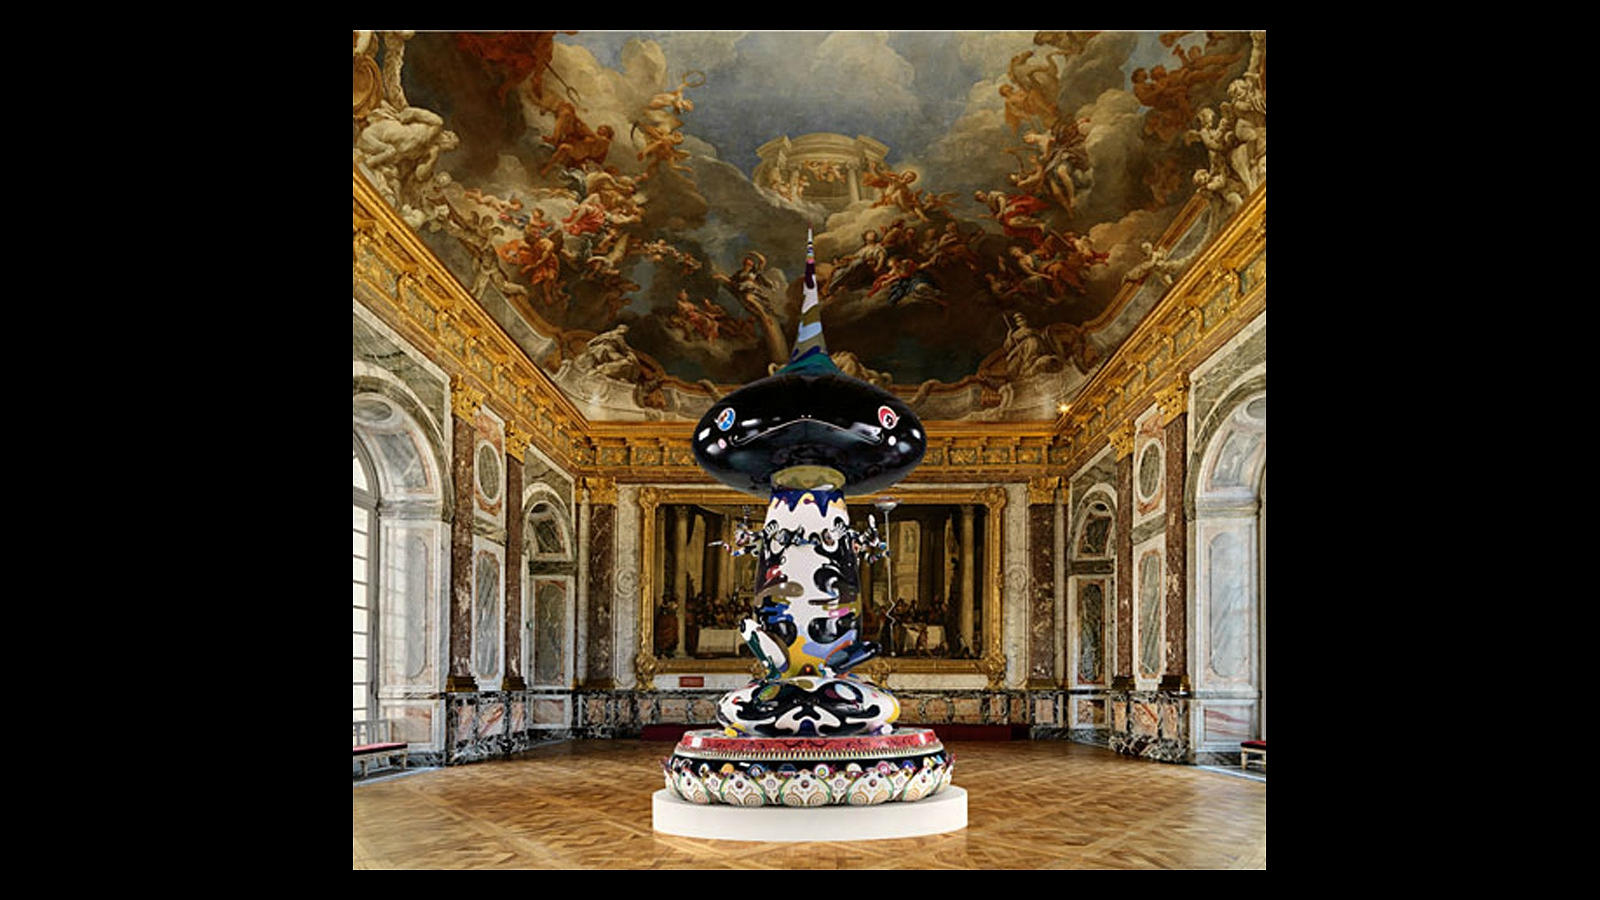 La presentación de la obra de Takashi Murakami en el Palacio de Versalles, fue todo un escándalo en 2010. En la imagen, una de las obras del artista